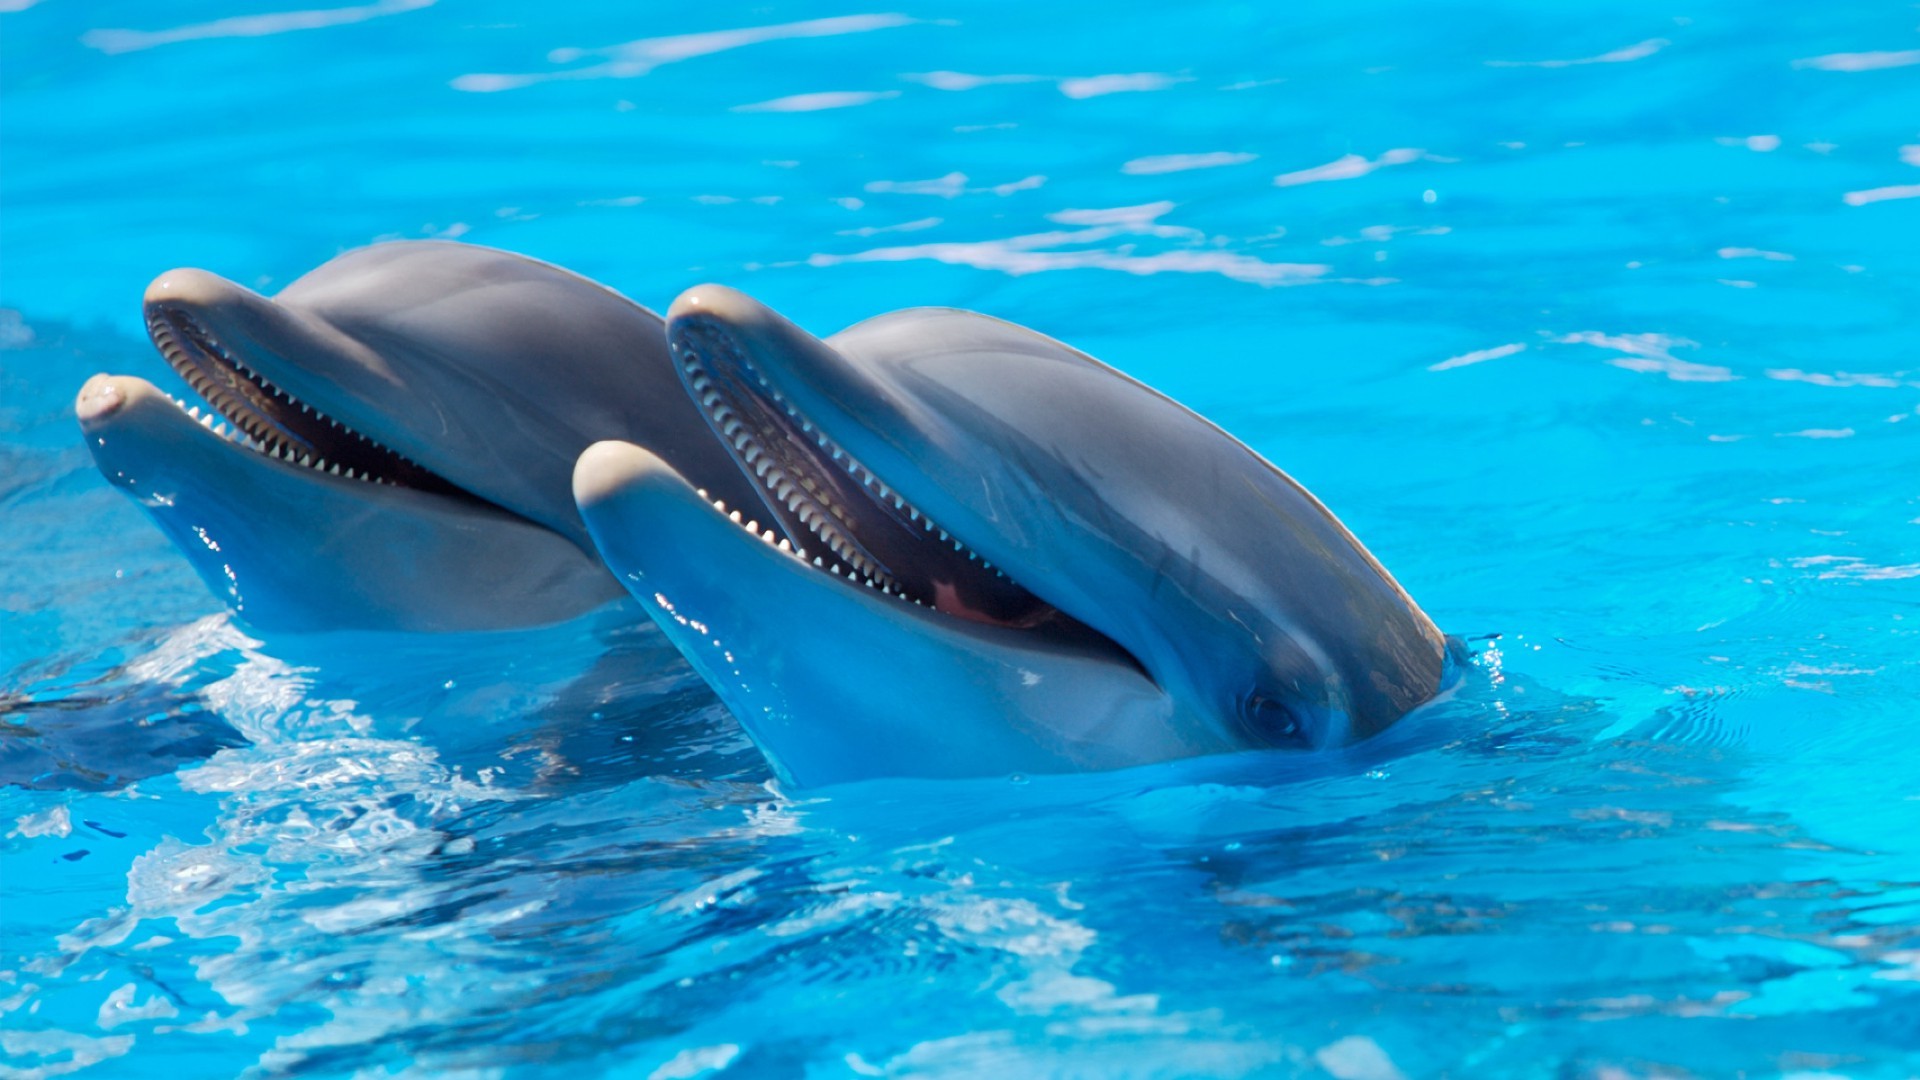 Дельфины заставка на айфон